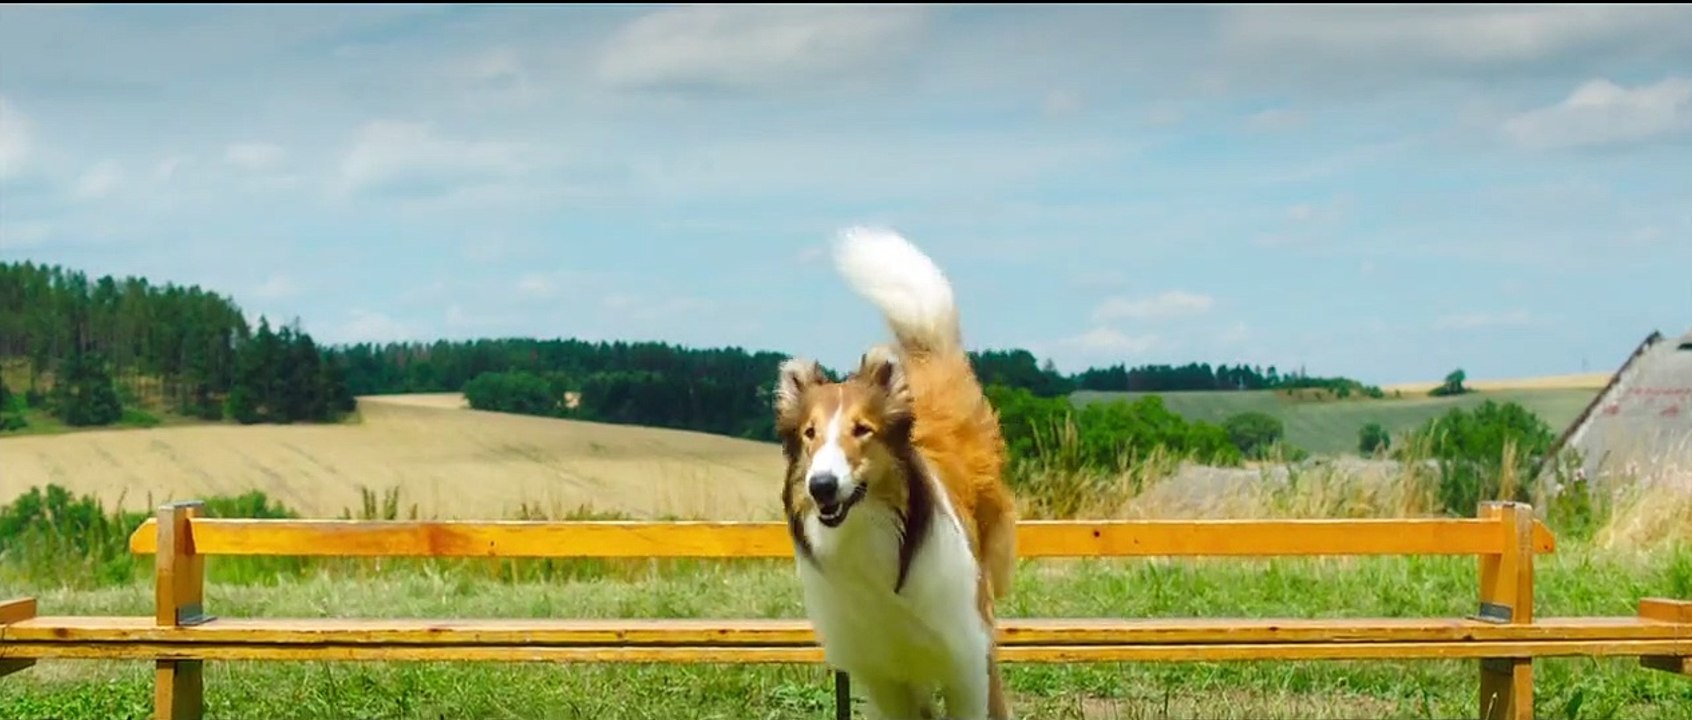 Lassie - Eine abenteuerliche Reise Trailer (3) DF